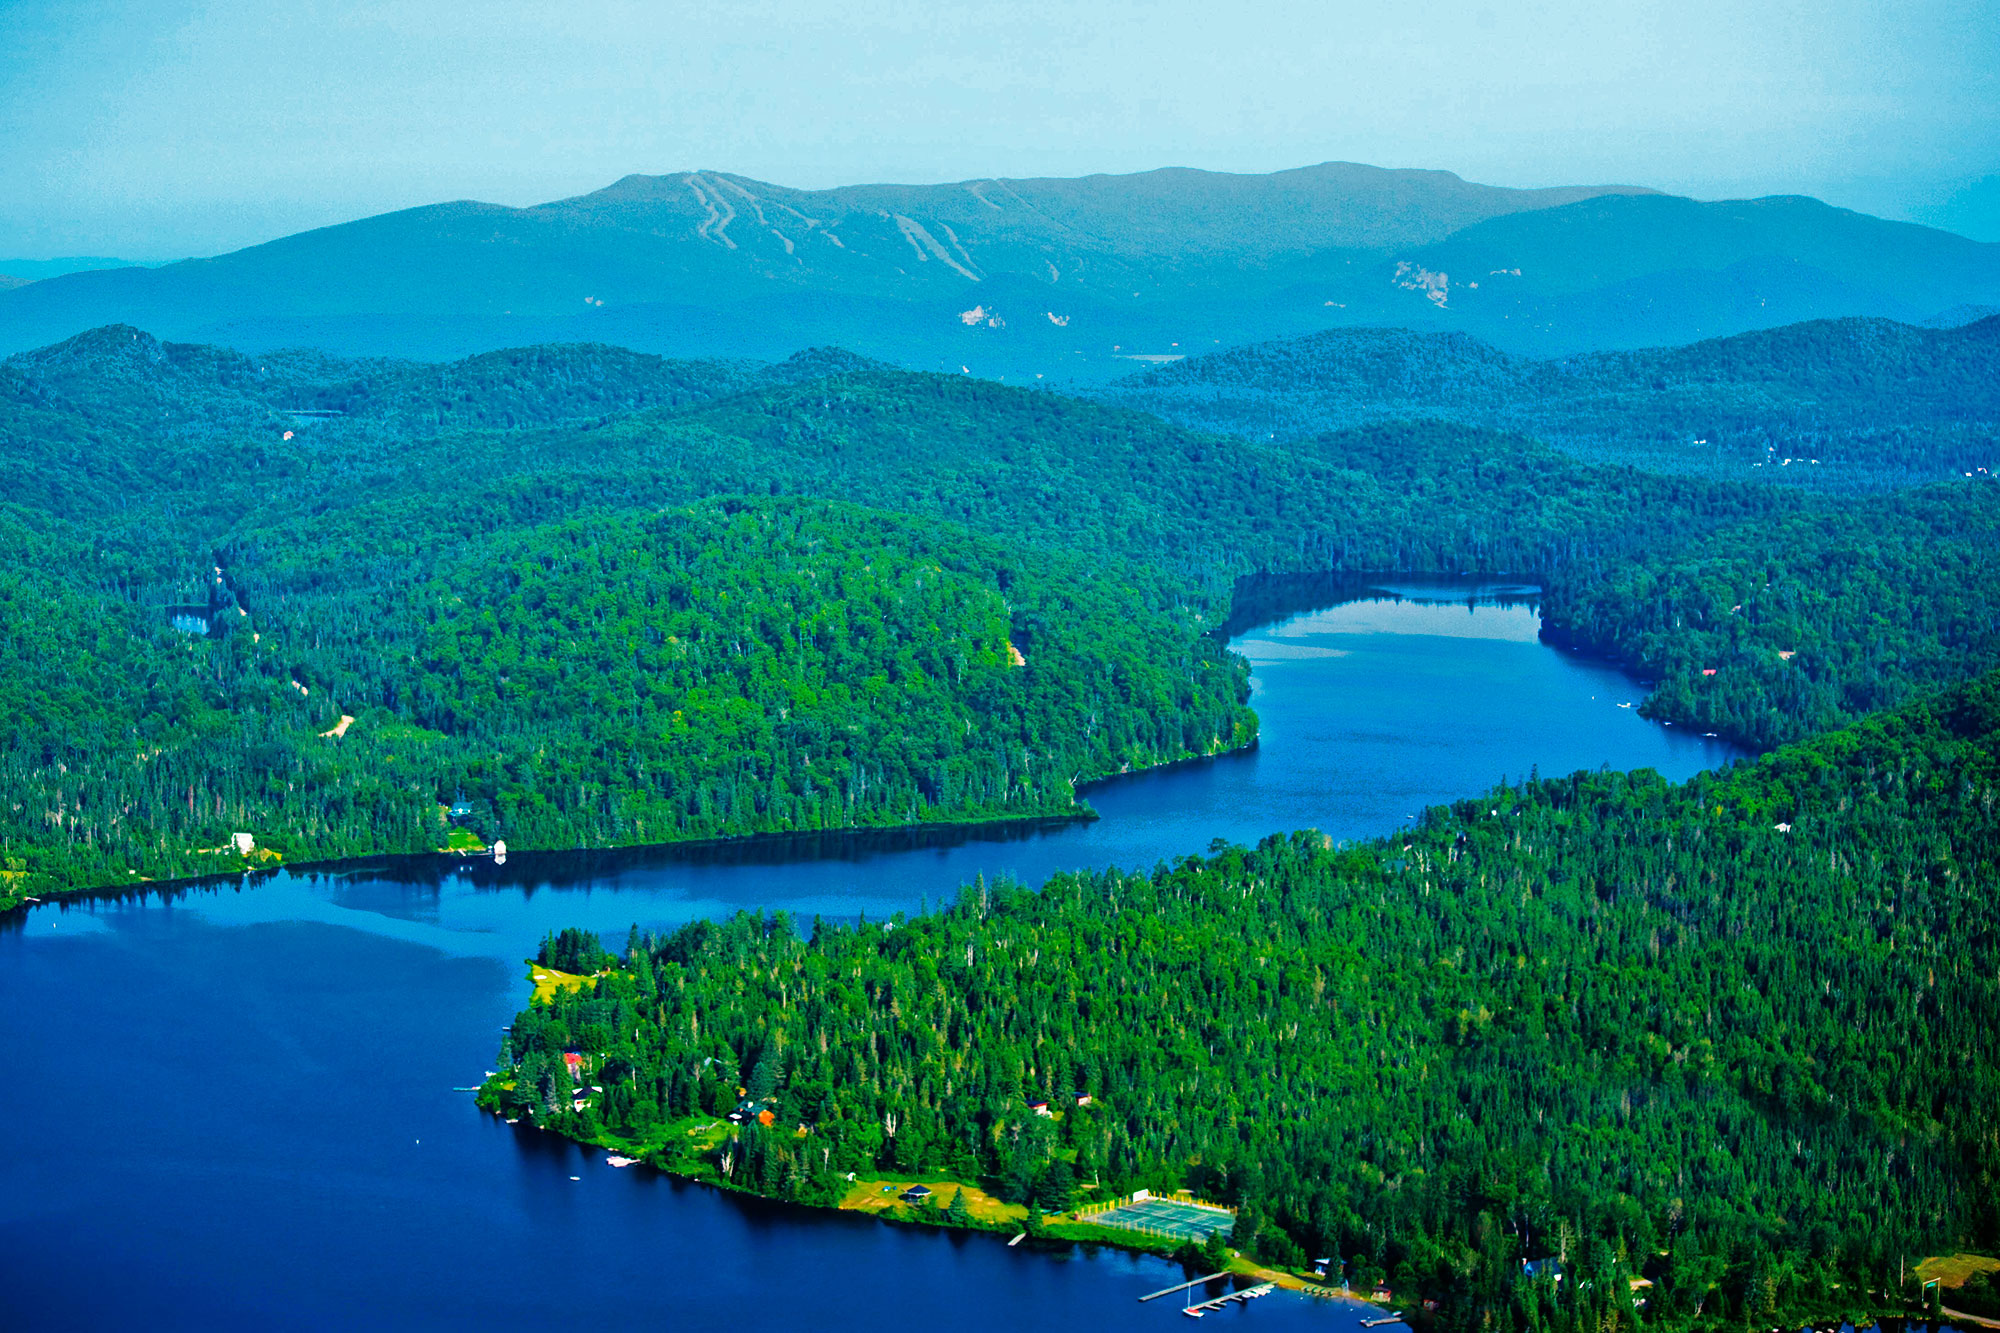 « À l'est du Canada, sur les rives d'un lac ou en pleine montagne, DTN propose des domaines privés, de 3 500 m² à 10 000 m². S'il existe un paradis pour les amoureux de grands espaces, d'air pur et de tranquillité, le parc national du Mont Tremblant s'en approche. Nous sommes ici au Québec, sur un vaste territoire de 1 500 km, offrant plus de 400 lacs, des rivières, des cascades et des centaines de kilomètres de sentiers qui en font un cadre absolument unique. C'est à 15 minutes à peine de Tremblant, le plus grand centre de villégiature du Québec et au coeur d'un espace sauvage et naturel grandiose, que s'inscrivent ces trois domaines privés viabilisés. Le premier, Domaine Nostalgia, est situé dans une superbe forêt d'érables et de sapins, et bénéficie d'un ensoleillement total. Il se compose de 70 terrains, d'environ 4000 m² chacun. Certains, nichés sur les hauteurs, bénéficient de vues dominantes sur les montagnes alentour et sur le Mont Tremblant. À vocation familiale, ce domaine bénéficie de nombreux aménagements : sentiers pédestres, jeux pour les enfants, espaces de loisirs, belvédère et accès aux lacs. Le second domaine, Domaine Secret Life, a la particularité d'offrir des vues panoramiques sur toute la vallée du Mont Tremblant et les grands lacs environnants. Il se caractérise également par ses grands espaces : tous les terrains font au minimum 8 000 m² et jusqu'à 15 000 m². Ultime privilège, les propriétaires ont accès aux lacs de pêche privés, situés en contrebas de la propriété. Enfin, Domaine Port d'Attache est un territoire de prestige, situé en bordure du grand Lac aux Quenouilles, lac navigable et accessible aux engins motorisés. Certains terrains limitrophes disposent d'un accès direct privé tandis que d'autres, plus en retrait, bénéficient d'un accès par une partie commune. Tous jouissent en tout cas de superbes vues sur le lac. L'AVIS DE FRANCK IACOMACCI Responsable des ventes pour la France de DTN Indicateur Bertrand : Quelle est la particularité de ces domaines? Franck Iacomacci : Ils répondent au rêve de ceux qui recherchent un refuge paradisiaque en pleine nature, au coeur de la forêt québécoise. Avec ces trois domaines, DTN, le plus grand propriétaire foncier de la région du Mont Tremblant, propose toute une gamme de terrains boisés, intimes, à proximité des services et de toutes les commodités au coeur des montagnes laurentiennes du Québec. Nous sommes situés à 12 km de Tremblant, à 1 h 20 de Montréal et à 1 h de l'aéroport de Montréal-Dorval. Tous nos domaines privés sont viabilisés et bénéficient de l'électricité. Nous réalisons la route principale du domaFranck Iacomacci, responsable des ventes pour la Franceine et les chemins d'accès aux propriétés et aménageons aussi des sentiers pédestres, jeux d'enfants, espaces de loisirs et accès aux lacs. Des entrées privées protègent l'intimité des résidences et nous leur associons toujours des matériaux nobles tels que le fer forgé la pierre ou le bois. I.B. : Combien coûte un terrain en pleine nature ? F.I. : Pour le Domaine NostaIgia, les prix varient entre 40 000 et 60 000 euros. Pour celui du Port D’Attache, ils vont de 87 000 à 206 000 euros. Un terrain viabilisé se vend en moyenne entre 10 et 15 euros le m², soit 42 000 euros TTC pour des parcelles de 4 000 m². À titre d'exemple, une maison clés en main, avec terrain, coûtera 175 000 euros, soit quatre à cinq fois moins qu'en France. D'ailleurs, 70 % de notre clientèle européenne est française, et les acquéreurs sont avant tout des promoteurs qui connaissent bien le marché. En outre, 50 % de nos ventes sont réalisées pour des placements, les domaines n’étant construits qu’à 30%. Cet acte de placement s’accompagne toujours d’une part de rêve : celui de construire sa cabane au Canada ! »